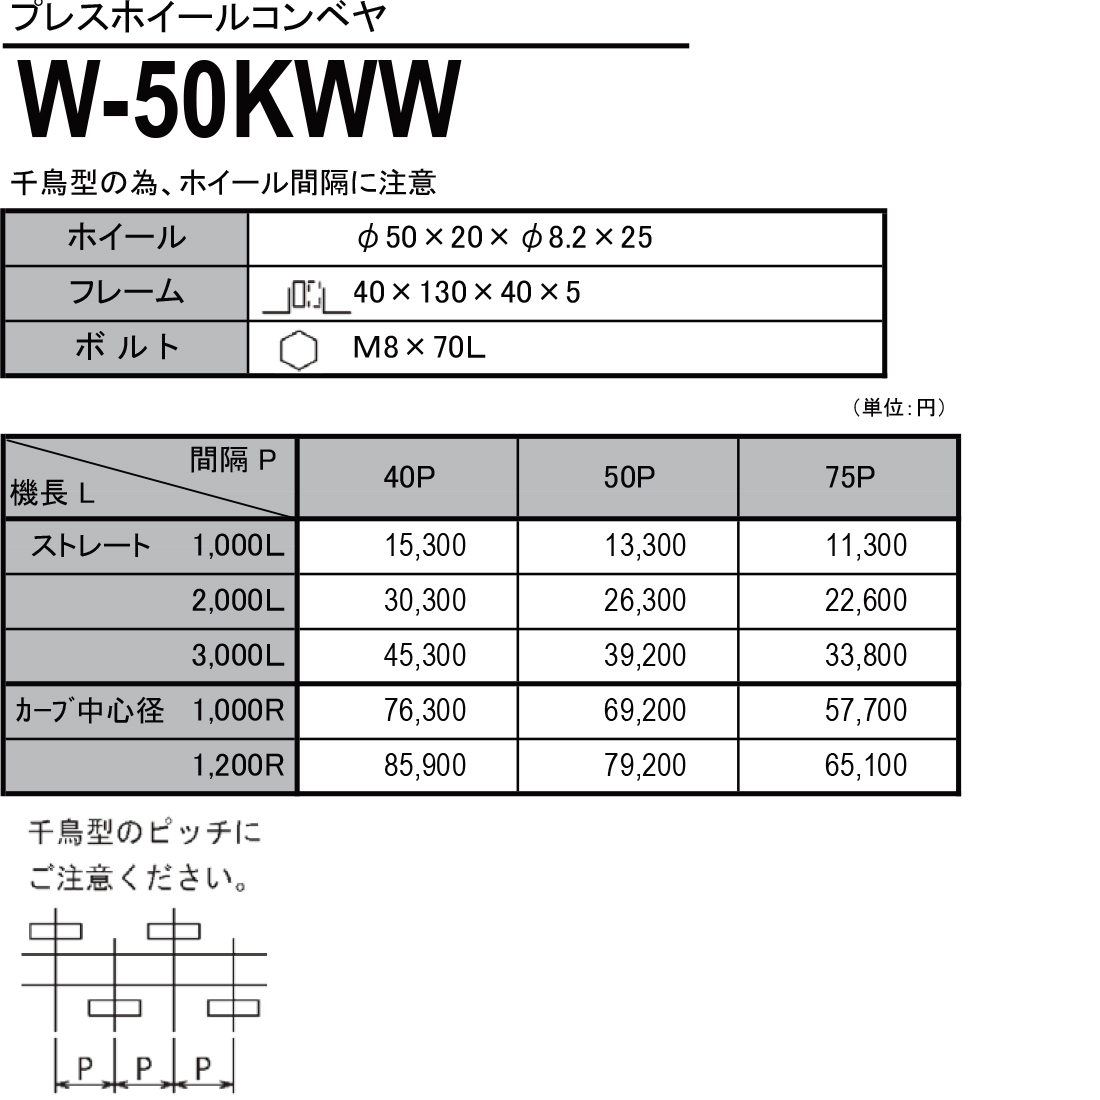 W-50KWW　プレスホイールコンベヤ(スチール製）　ホイールコンベヤ　価格表